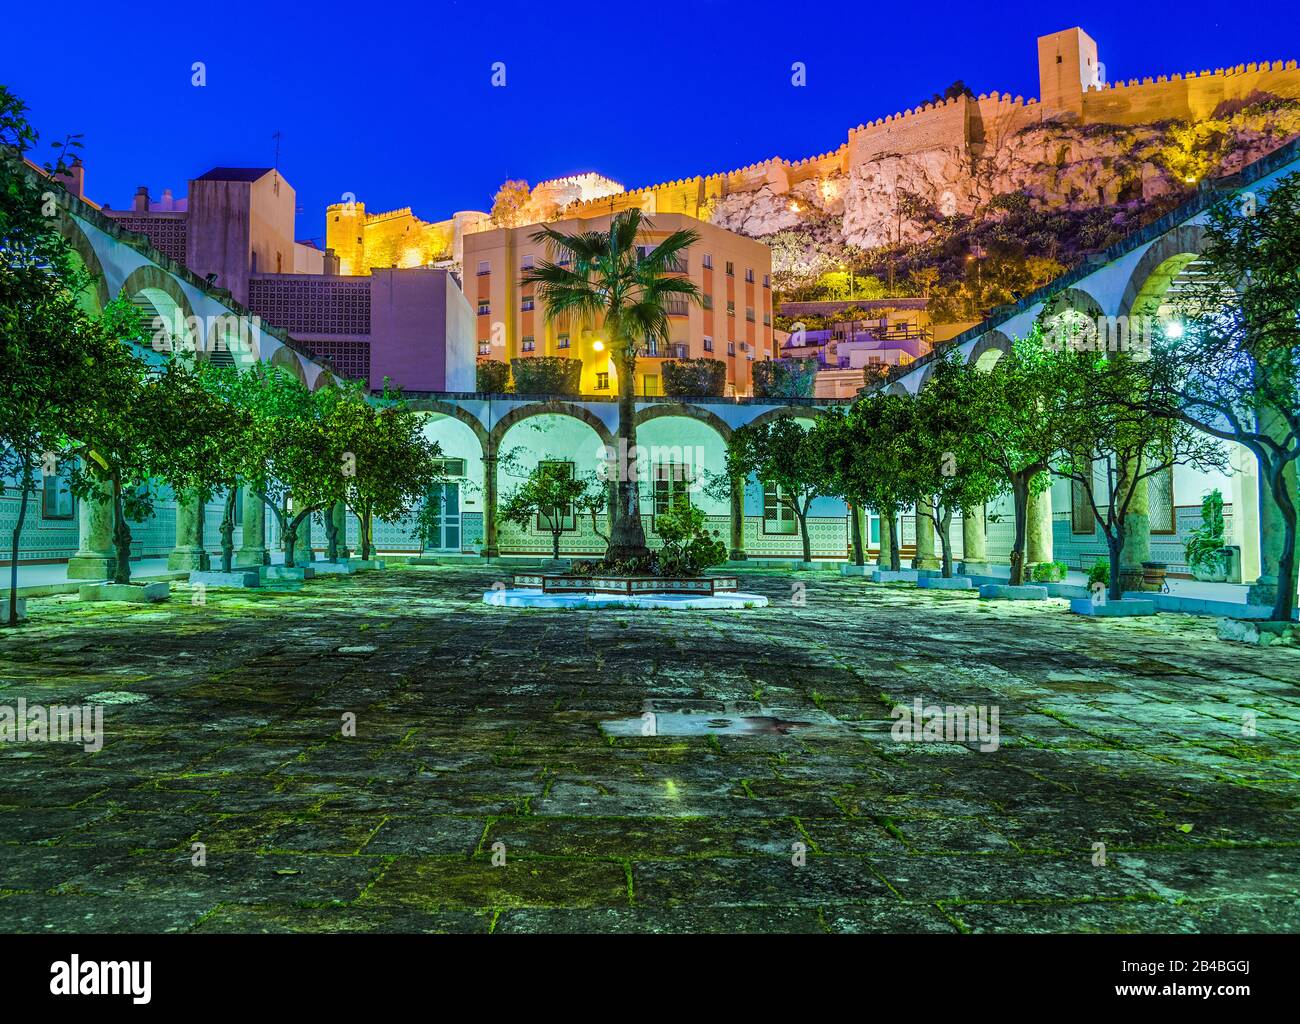 Patio de Los Naranjos nell'ora blu, con l'Alcazaba, illuminato sullo sfondo, città di Almeria, Andalusia, Spagna Foto Stock